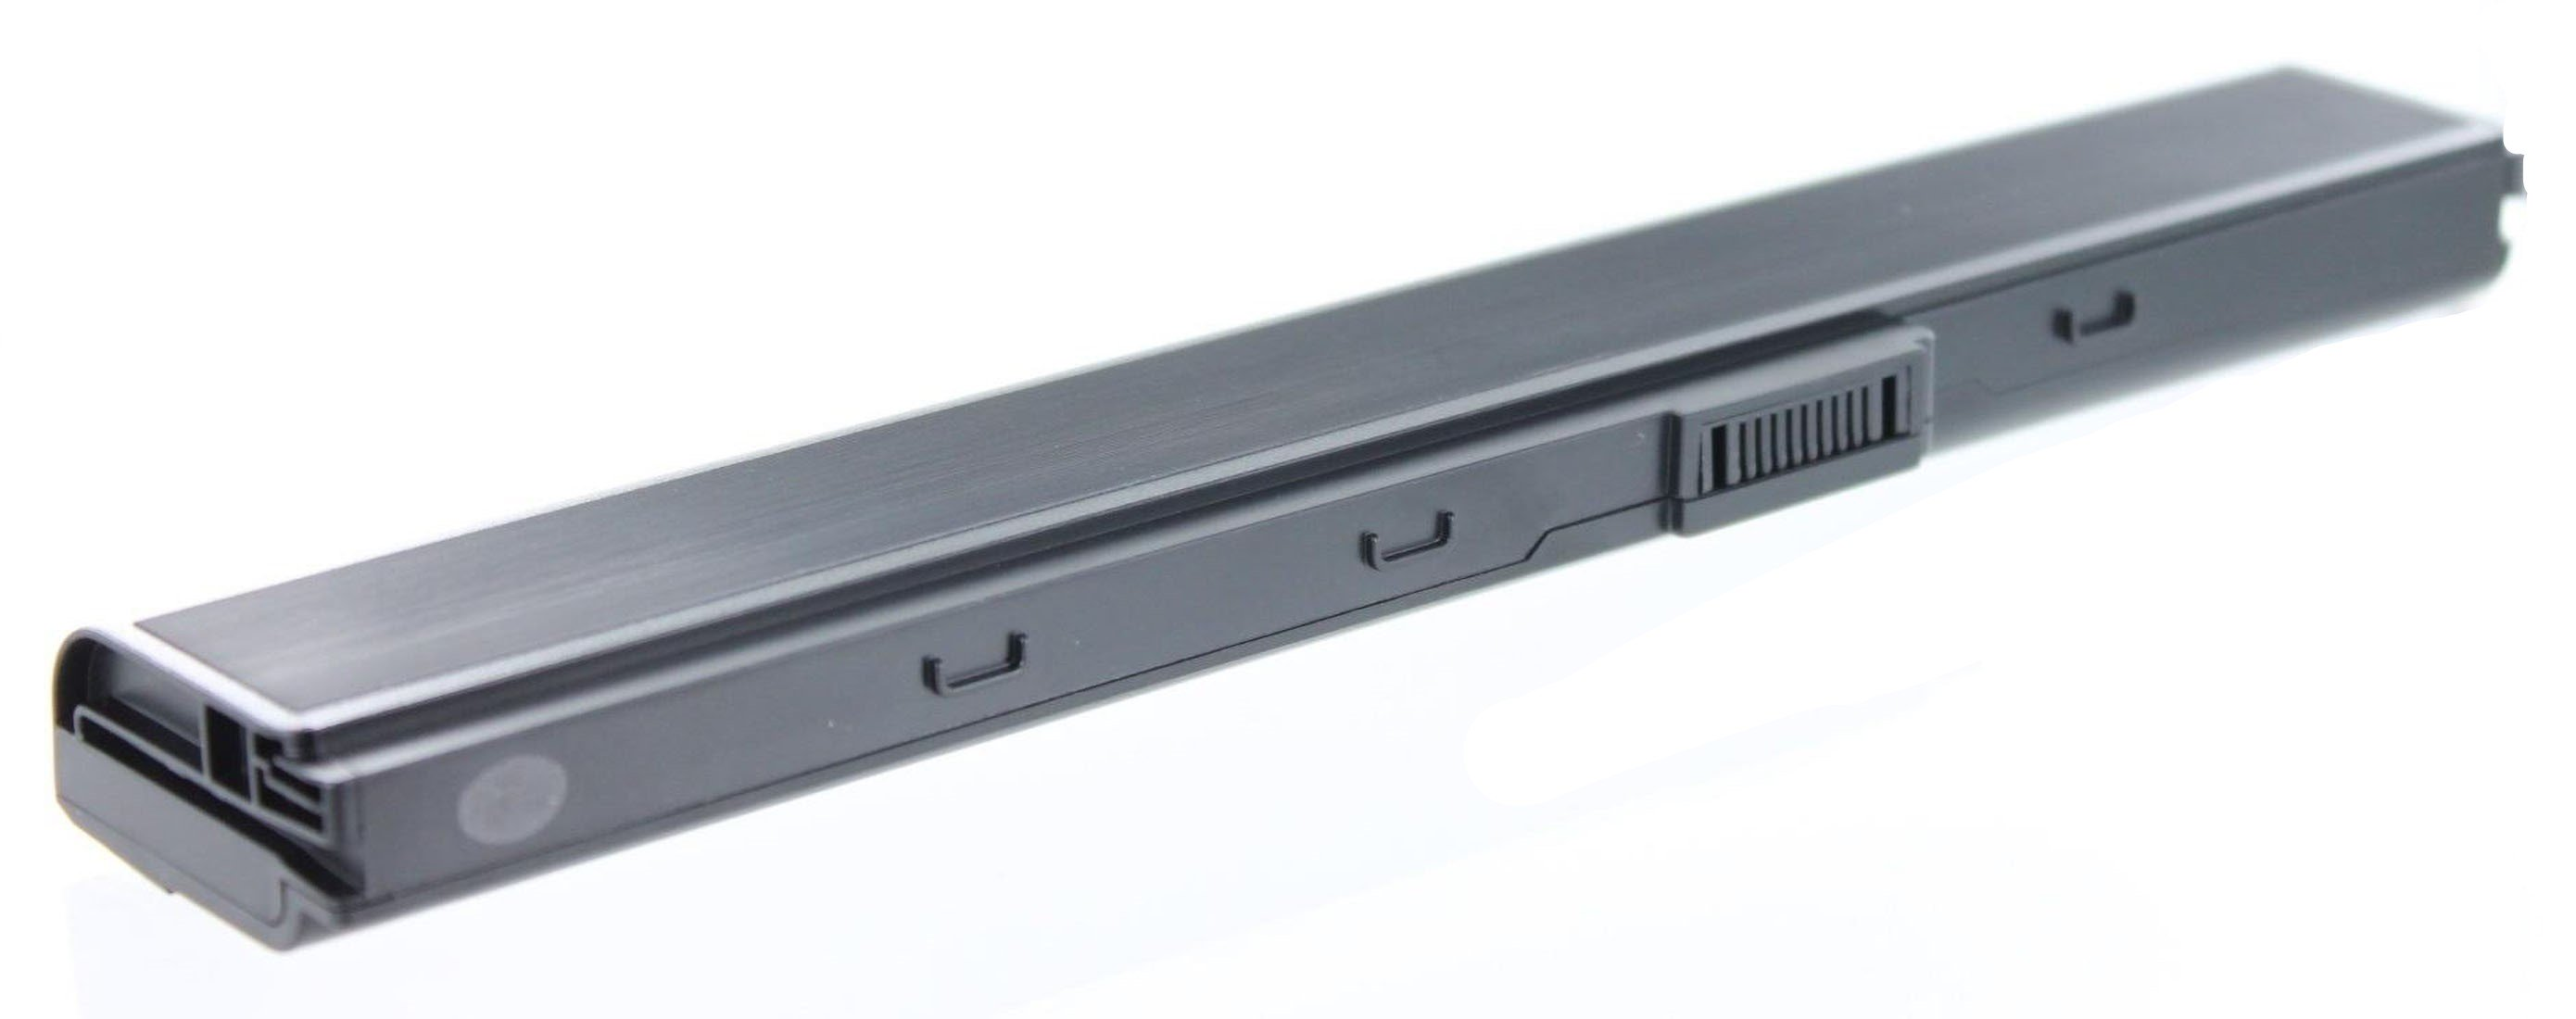 Pro Akku mit 10.8 52JU-SX116V Notebookakku, 4400 mAh AGI Volt, kompatibel Li-Ion Asus